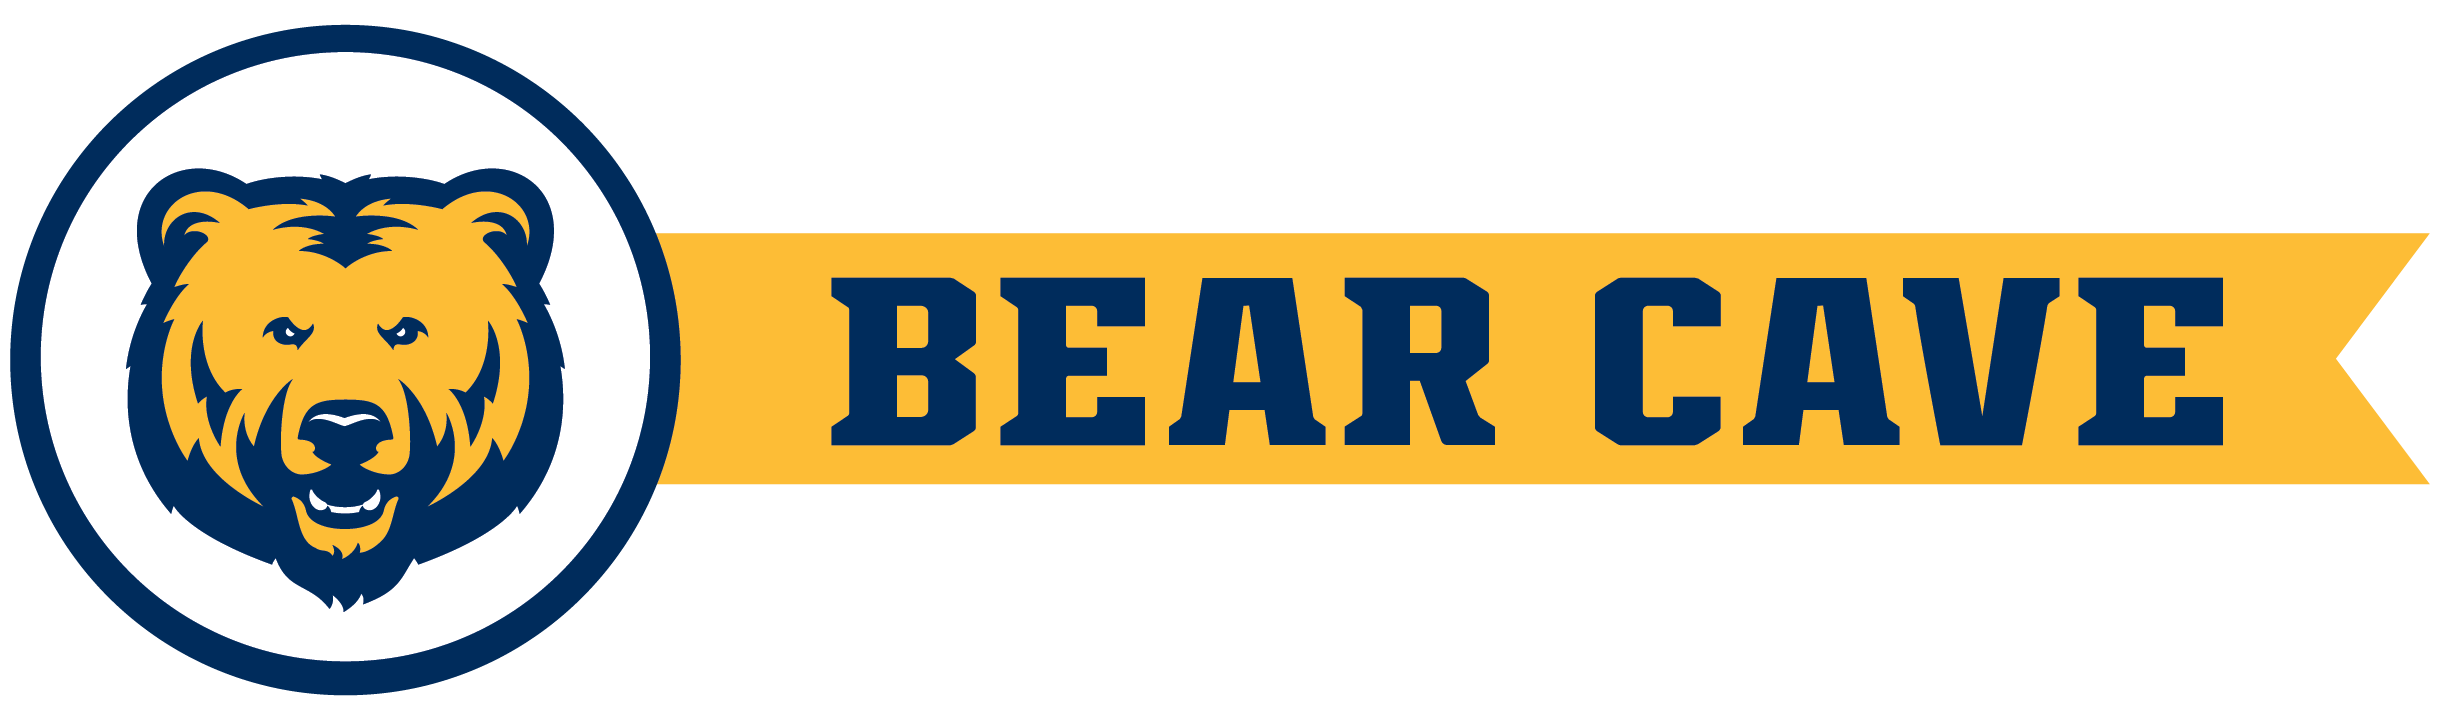 bearcave logo